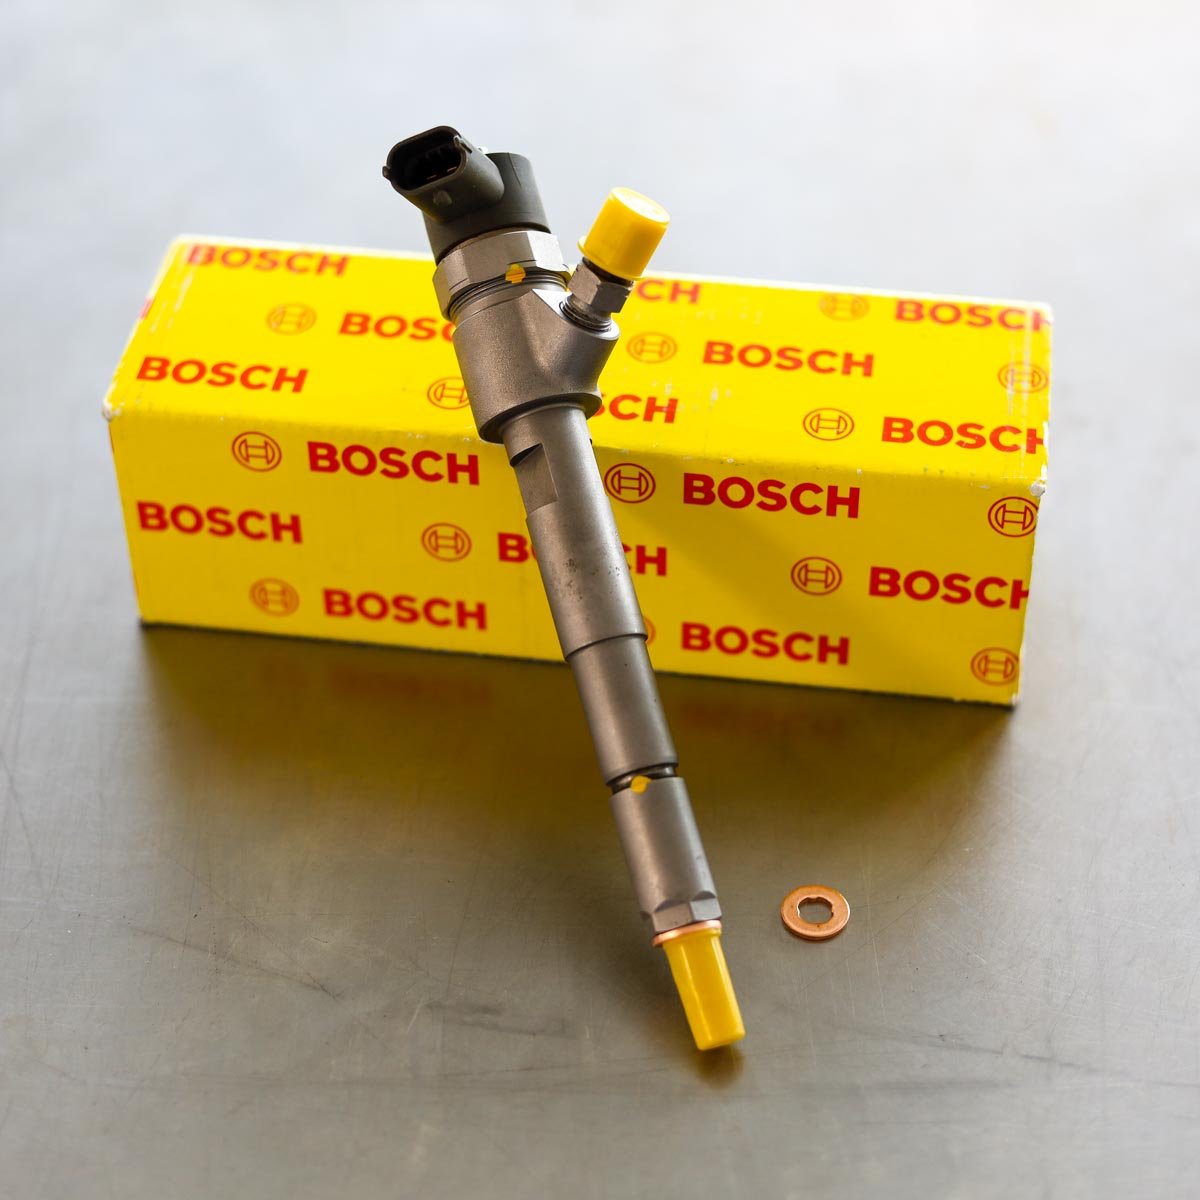 Wtryskiwacz Bosch naprawiony gotowy do wysyłki do kupującego na gwarancji w świetnej cenie